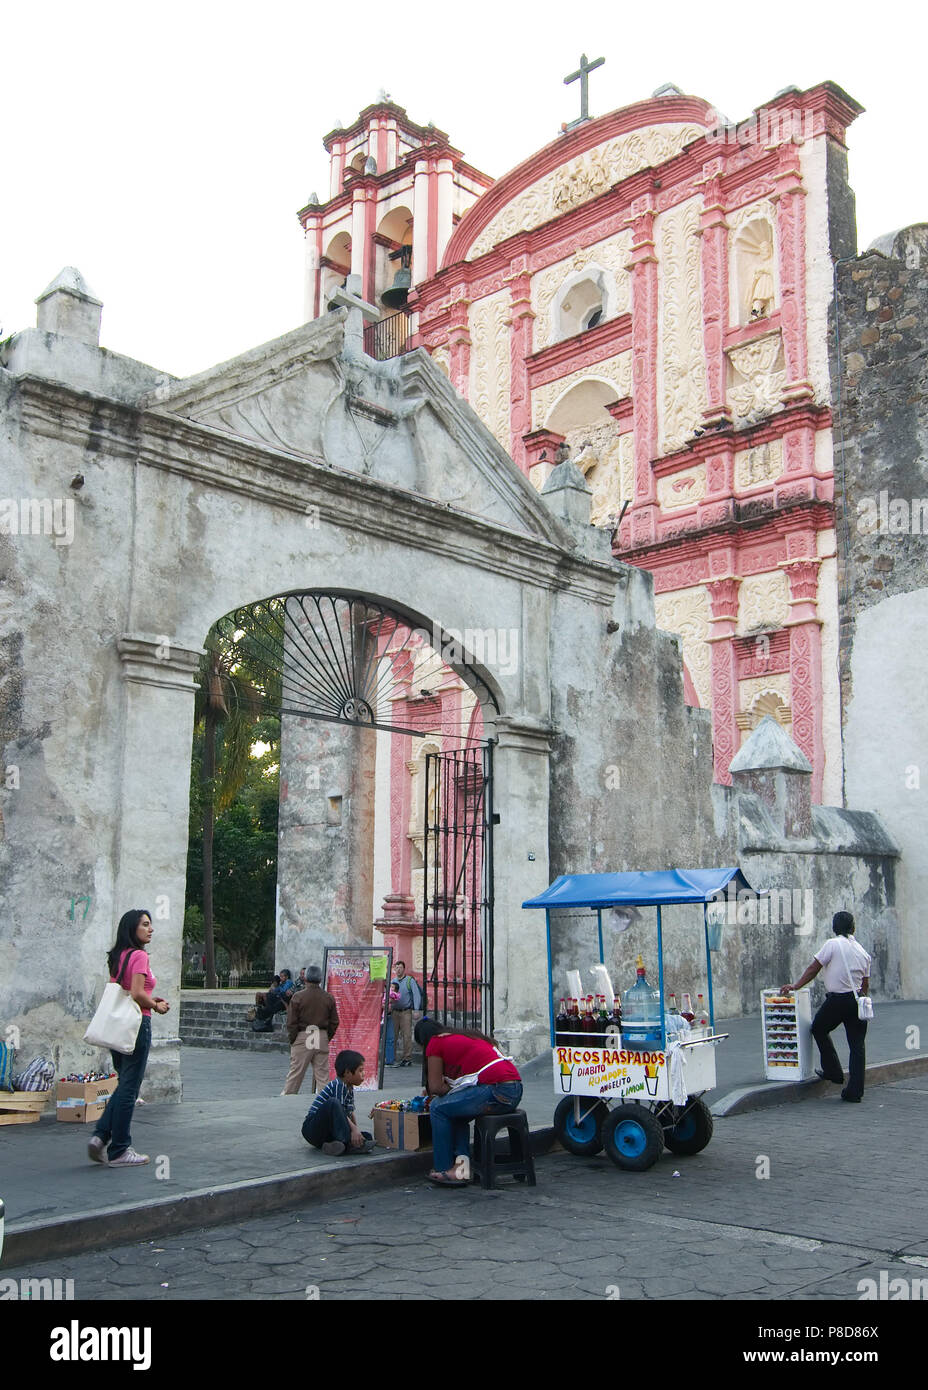 Cuernavaca, Morelos, Mexico - 2017: Exterior view of a chapel locate next to the Cathedral La Asuncion. Stock Photo